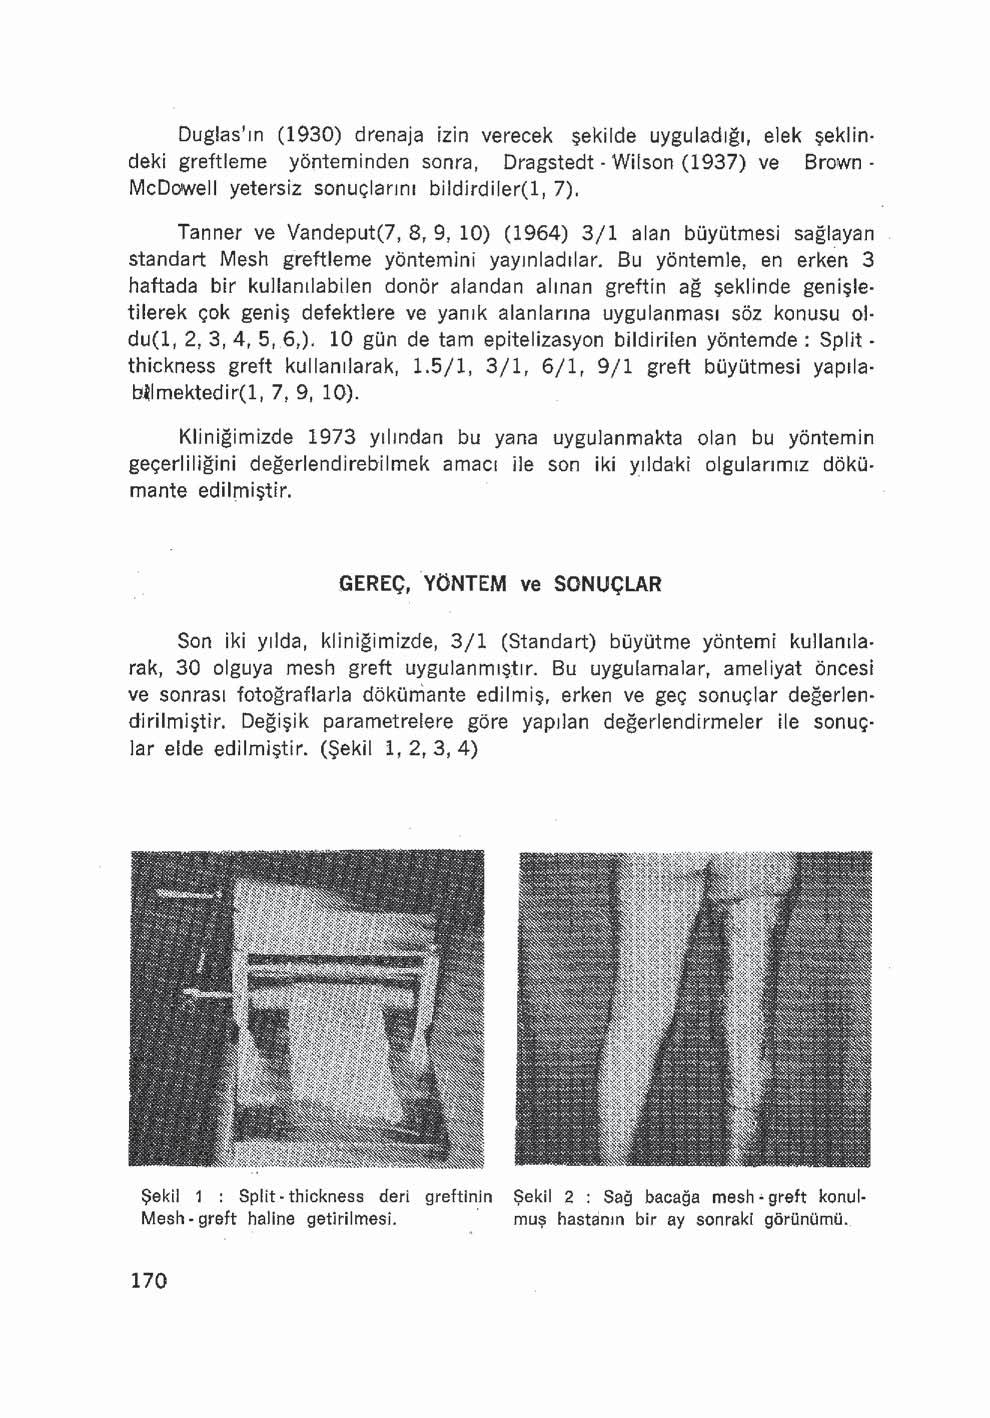 Duglas ın (1930) drenaja izin verecek şekilde uyguladığı, elek şeklindeki greftleme yönteminden sonra, Dragstedt - VVilson (1937) ve Brown- McDowell yetersiz sonuçlarını biîdirdiler(l, 7).